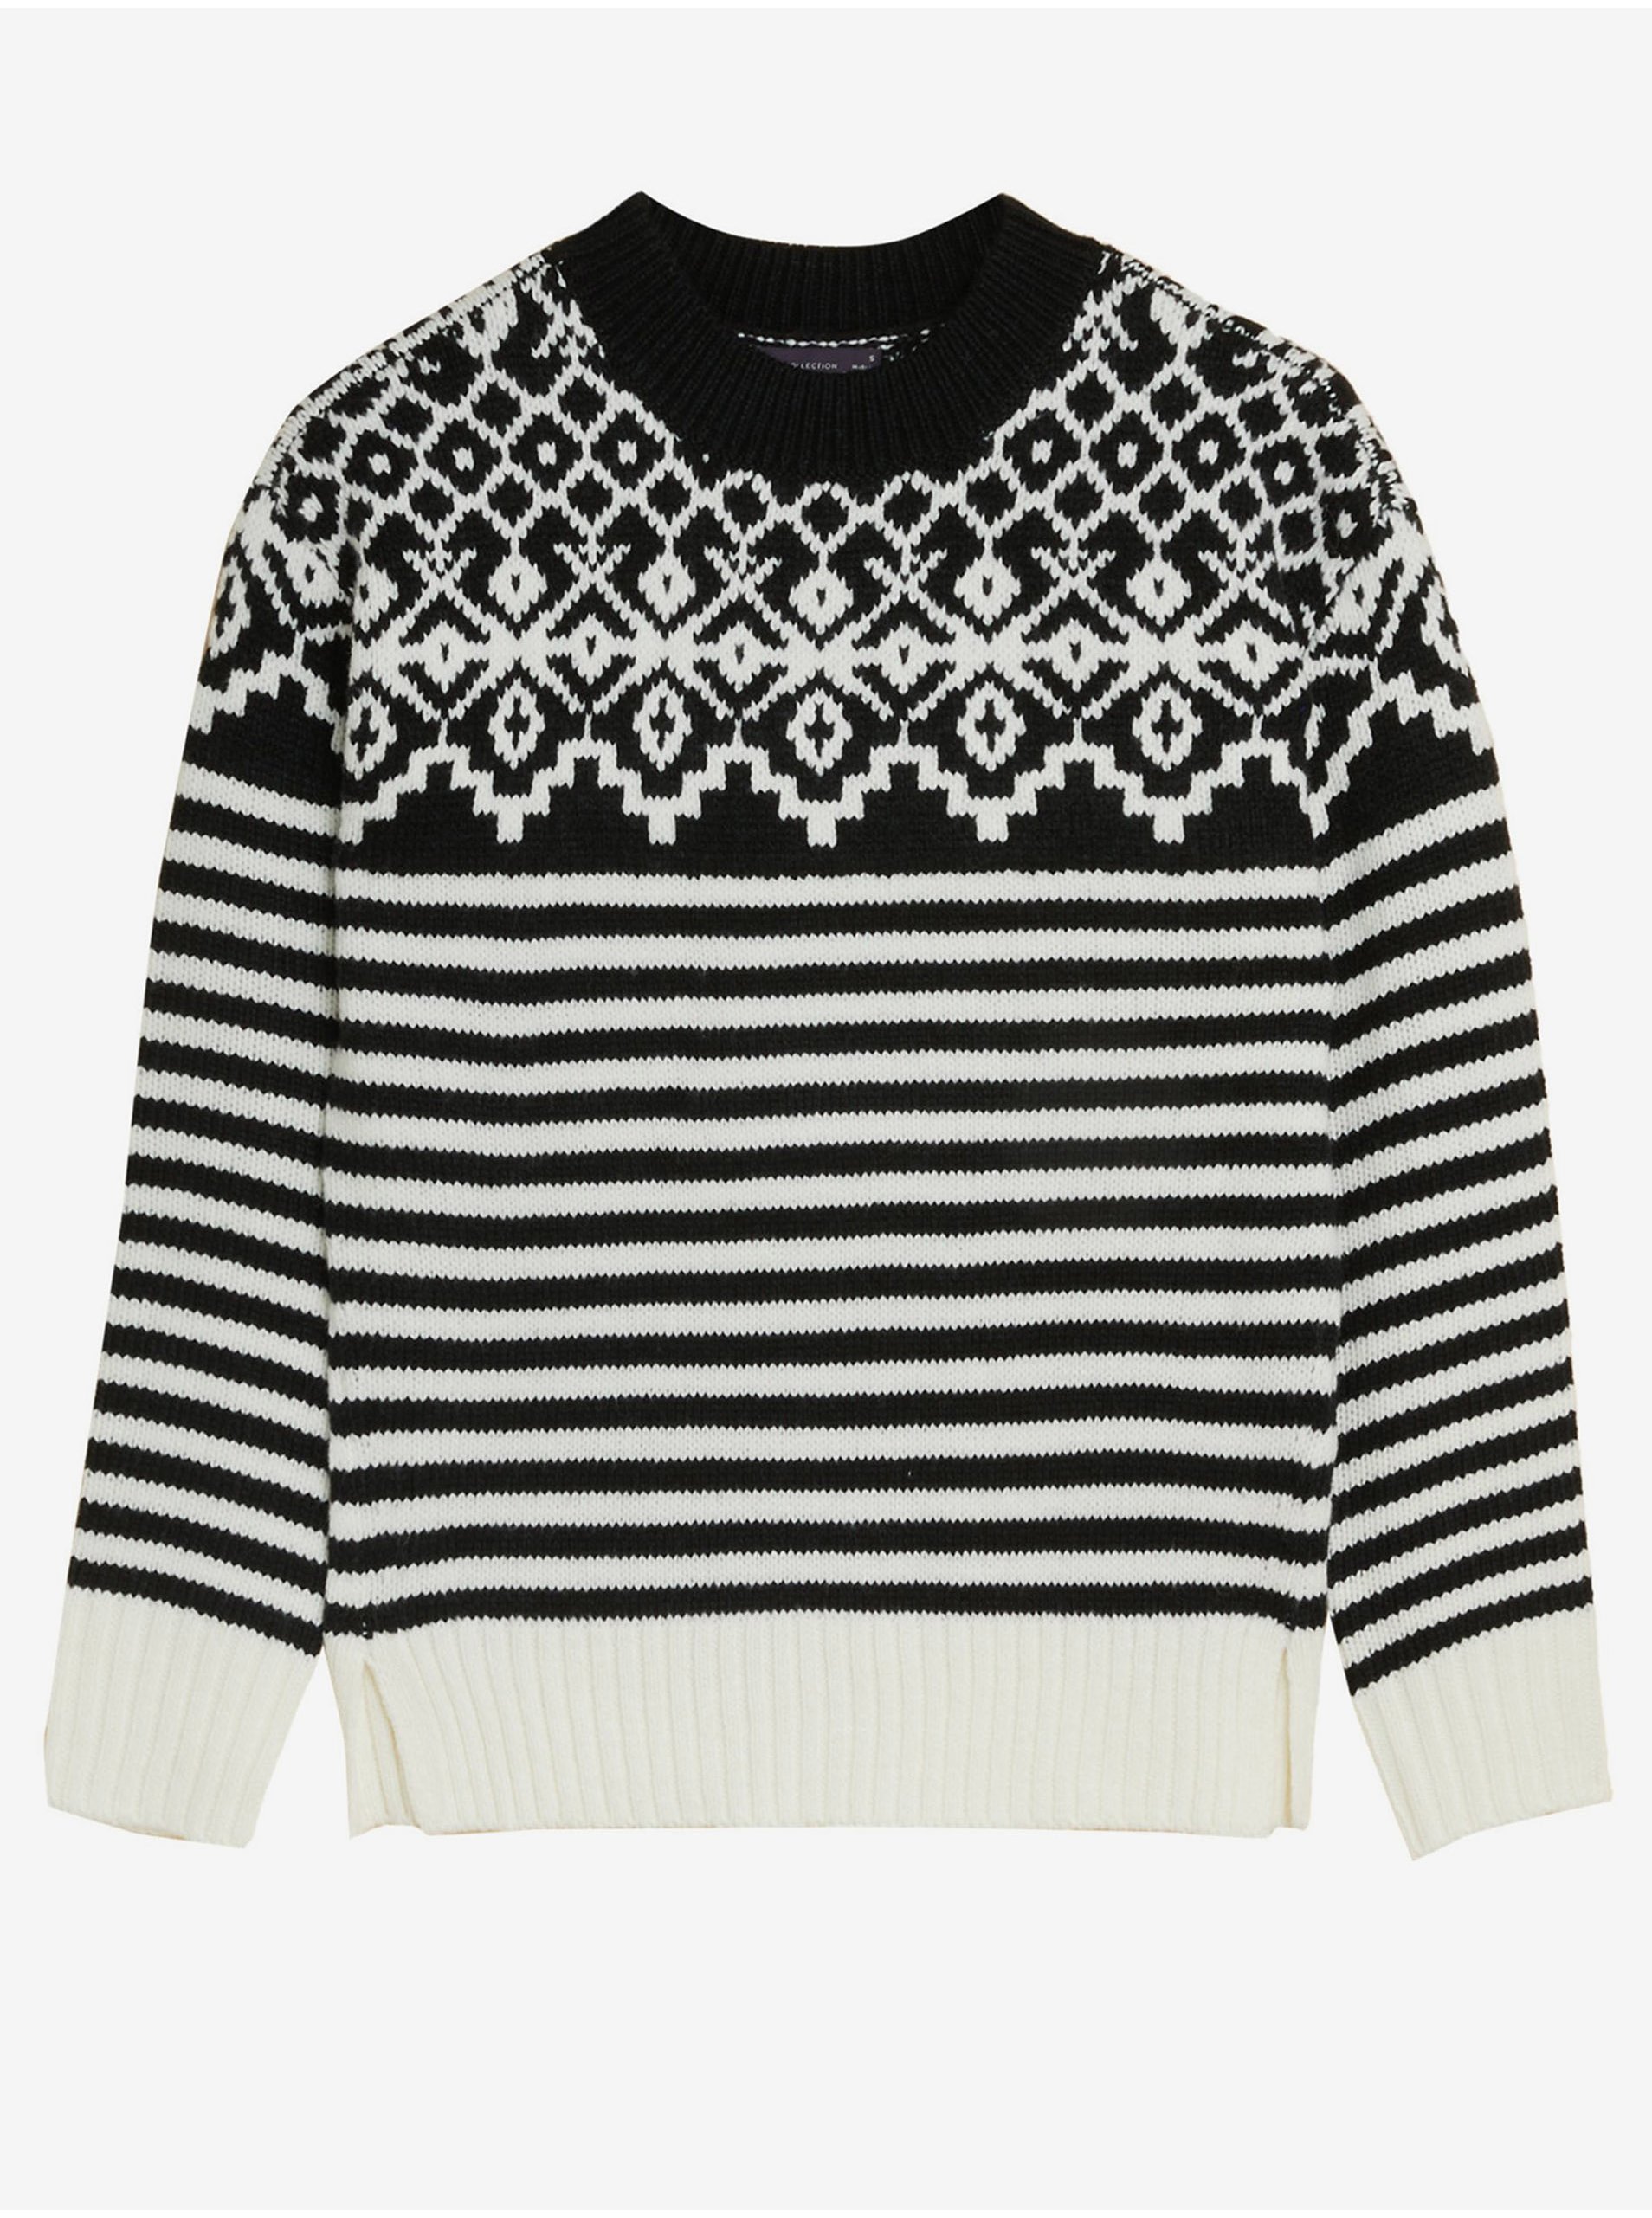 Černo-bílý dámský vzorovaný volný svetr Marks & Spencer